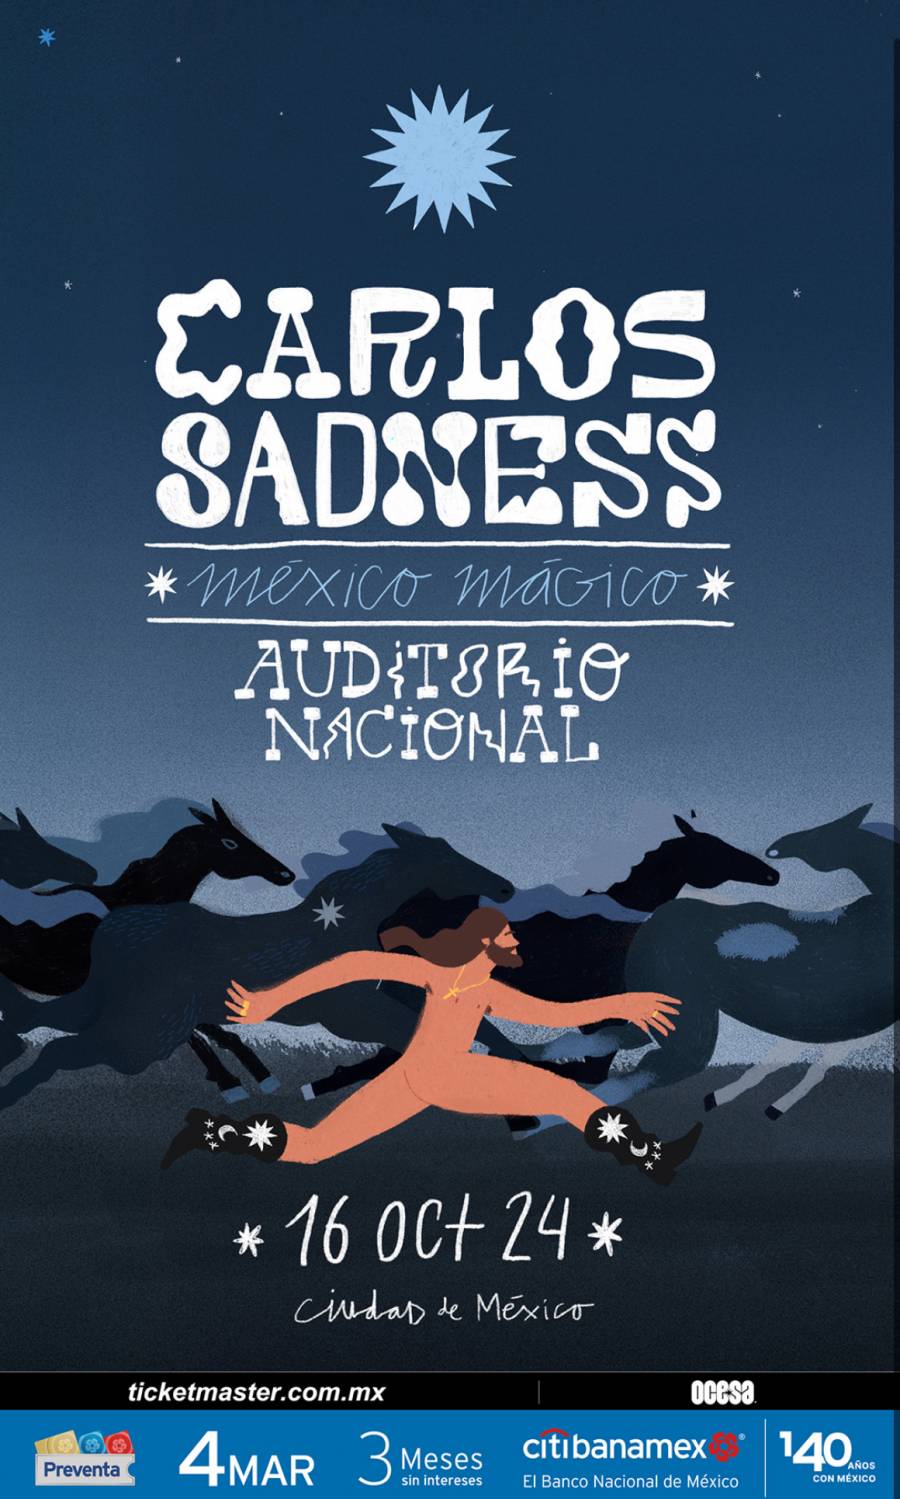  ¡Carlos Sadness por primera vez en el Auditorio Nacional!